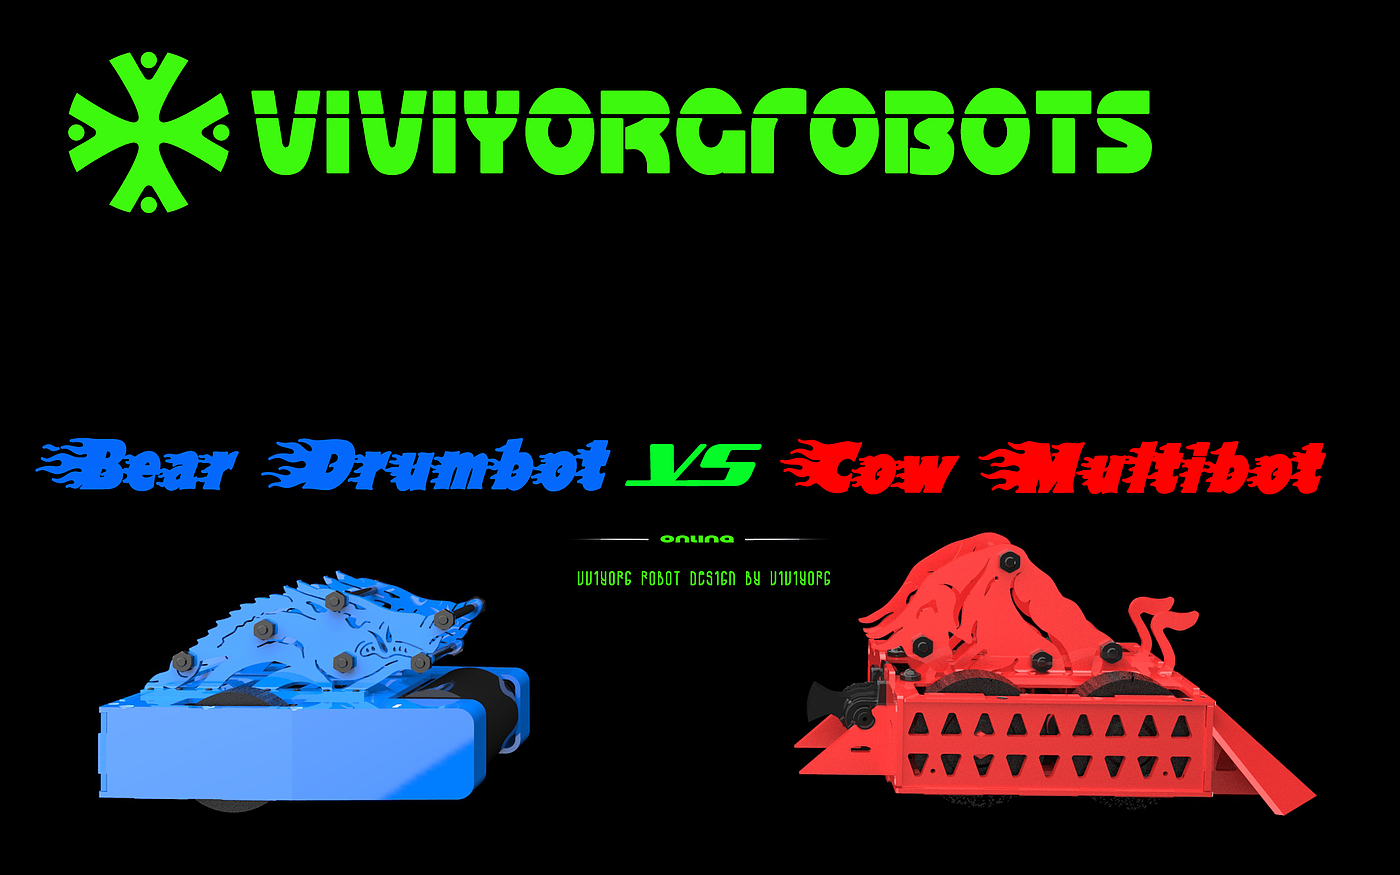 格斗机器人，对战机器人，AGV赛车，Robot Wars，RoboMasters，BattleBots，RobotGames，